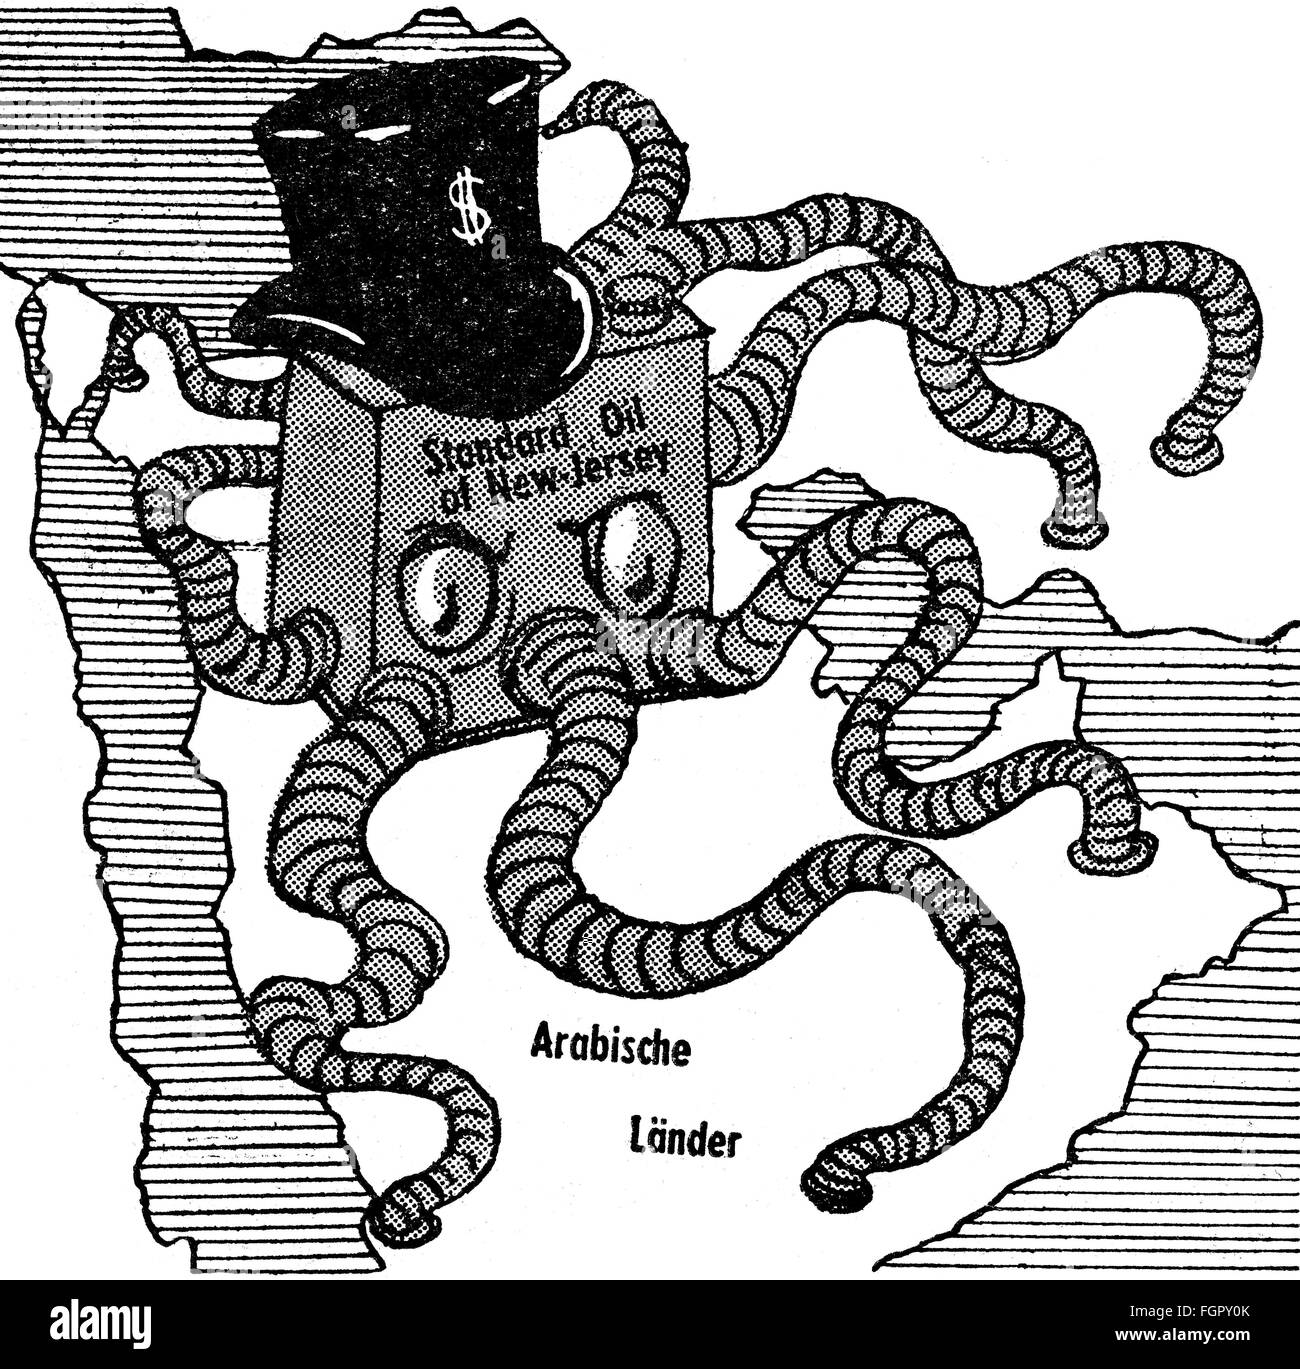 Energie, Rohöl, amerikanische Ölkrake, die die arabische Halbinsel bedroht, Karikatur, aus: 'Prawda', Moskau, 1958, Additional-Rights-Clearences-not available Stockfoto